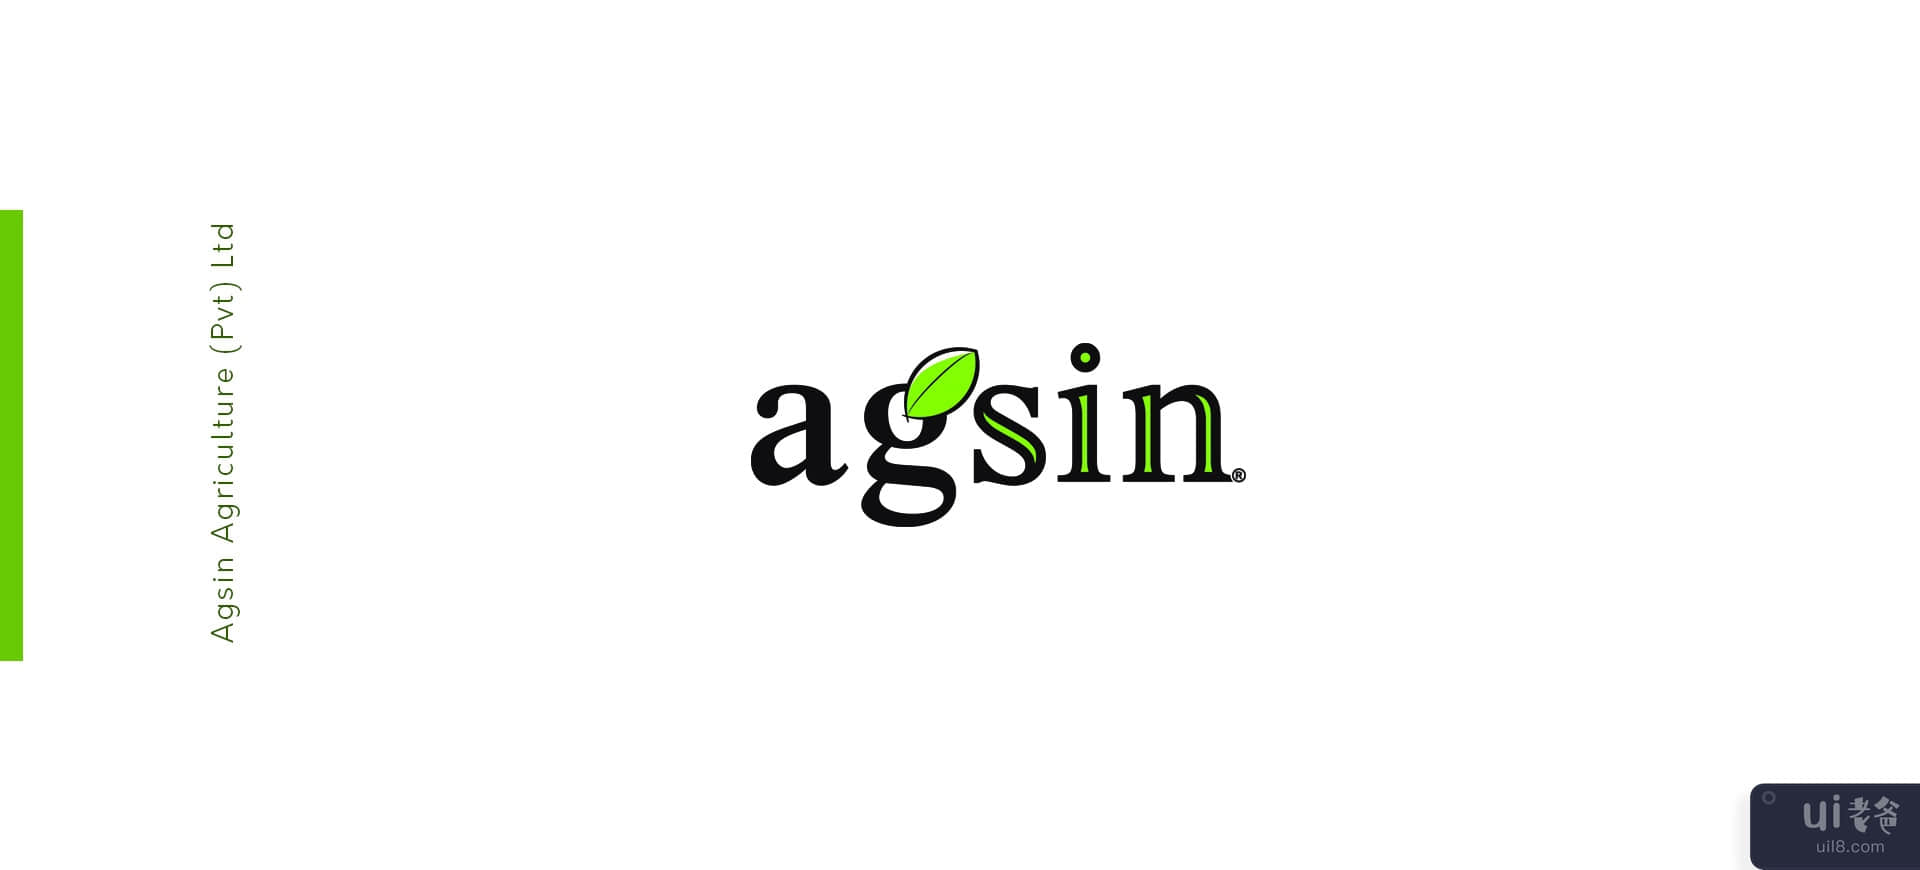 名片挑战 - Agsin 品牌标识(Business Card Challenge - Agsin Brand Identity)插图